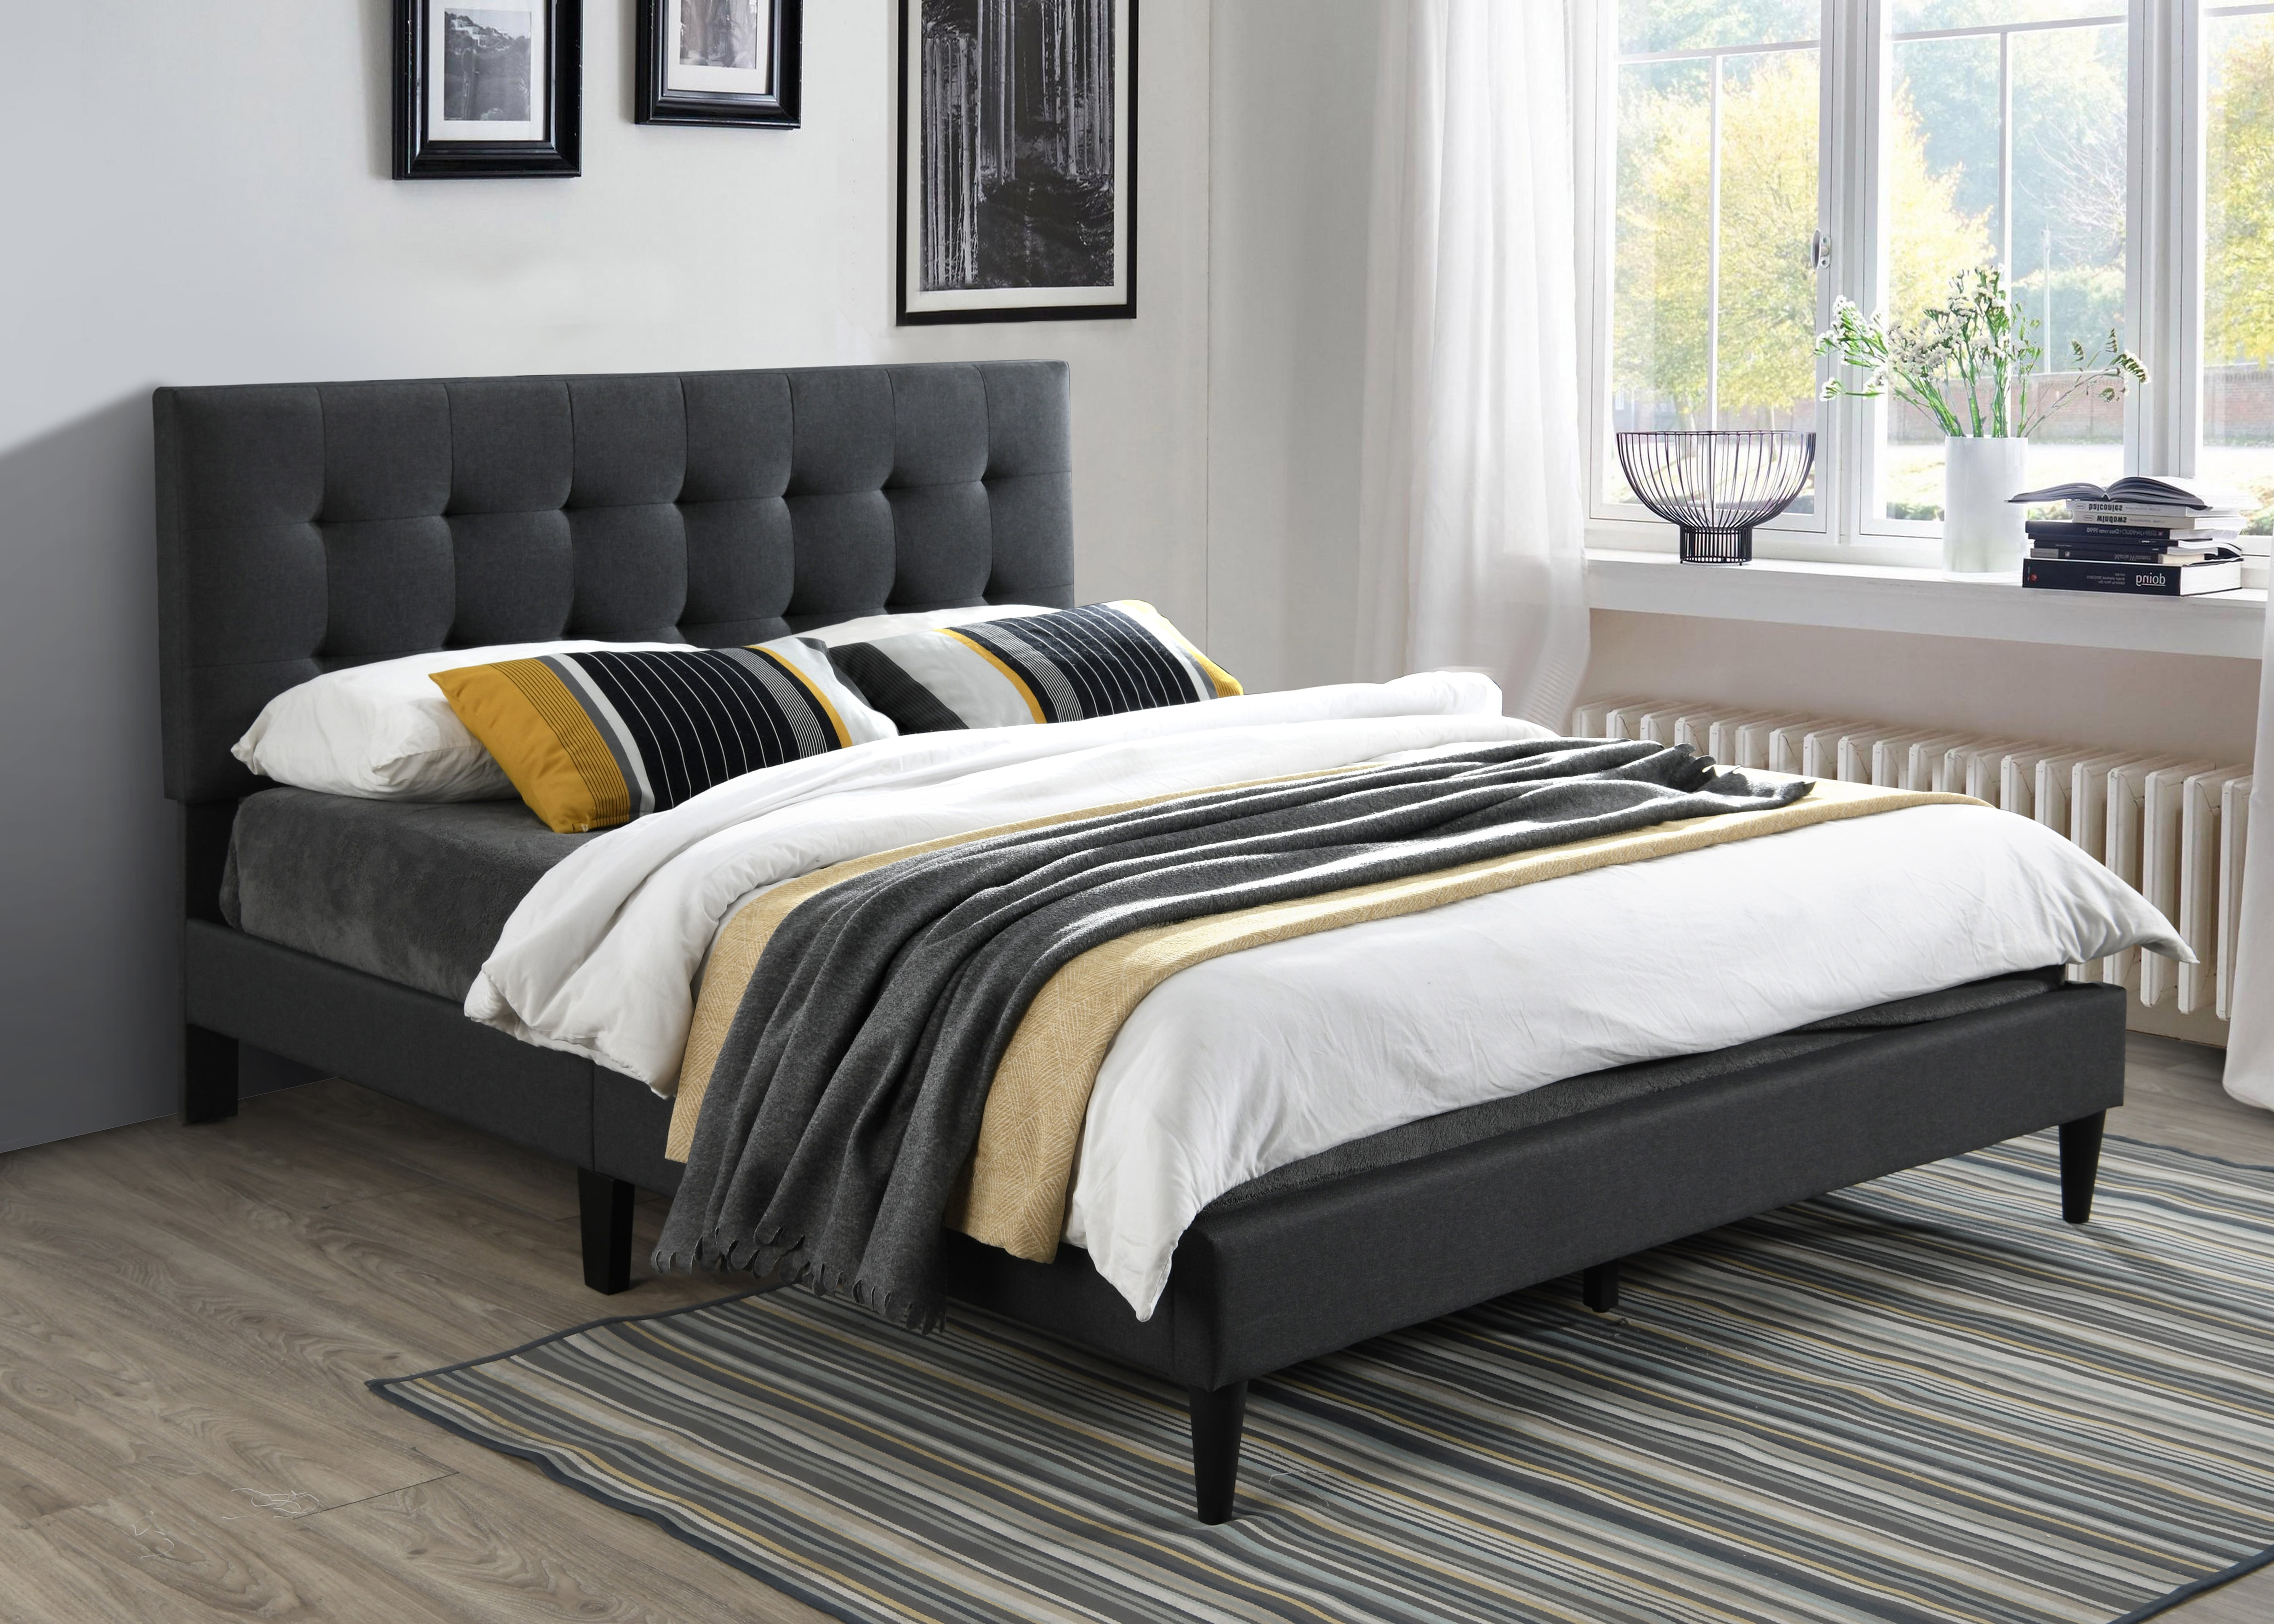 Ovis Milan Upholstered Platform Bed, Gray Tufted King Bed